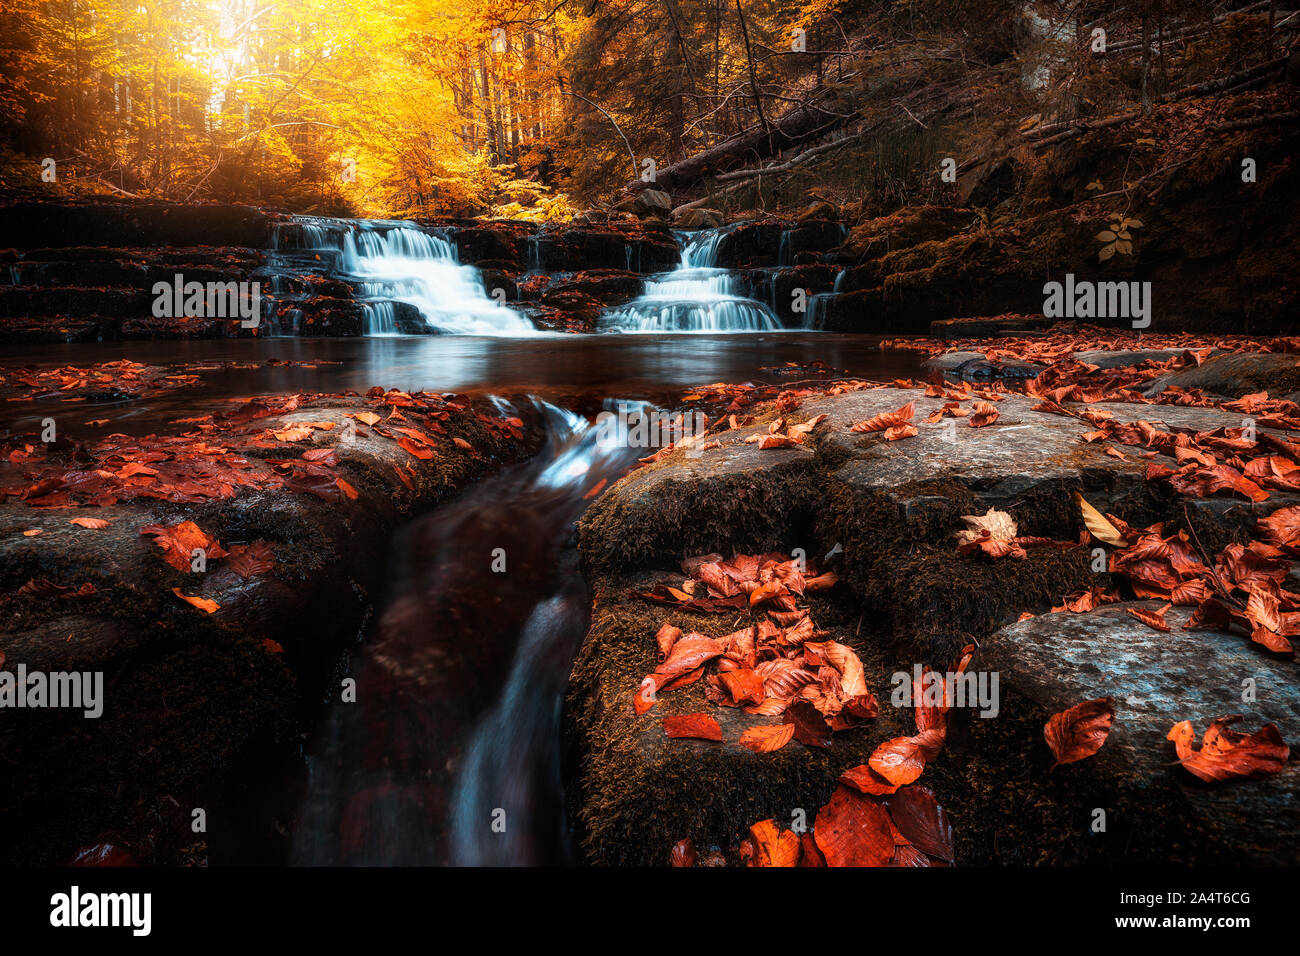 Schönen Wald im Herbst mit Fluss und Wasserfall Kaskade Stream in den Felsen mit farbenfrohen Roten gefallenen trockene Blätter, natürliche saisonale Hintergrund. Stockfoto